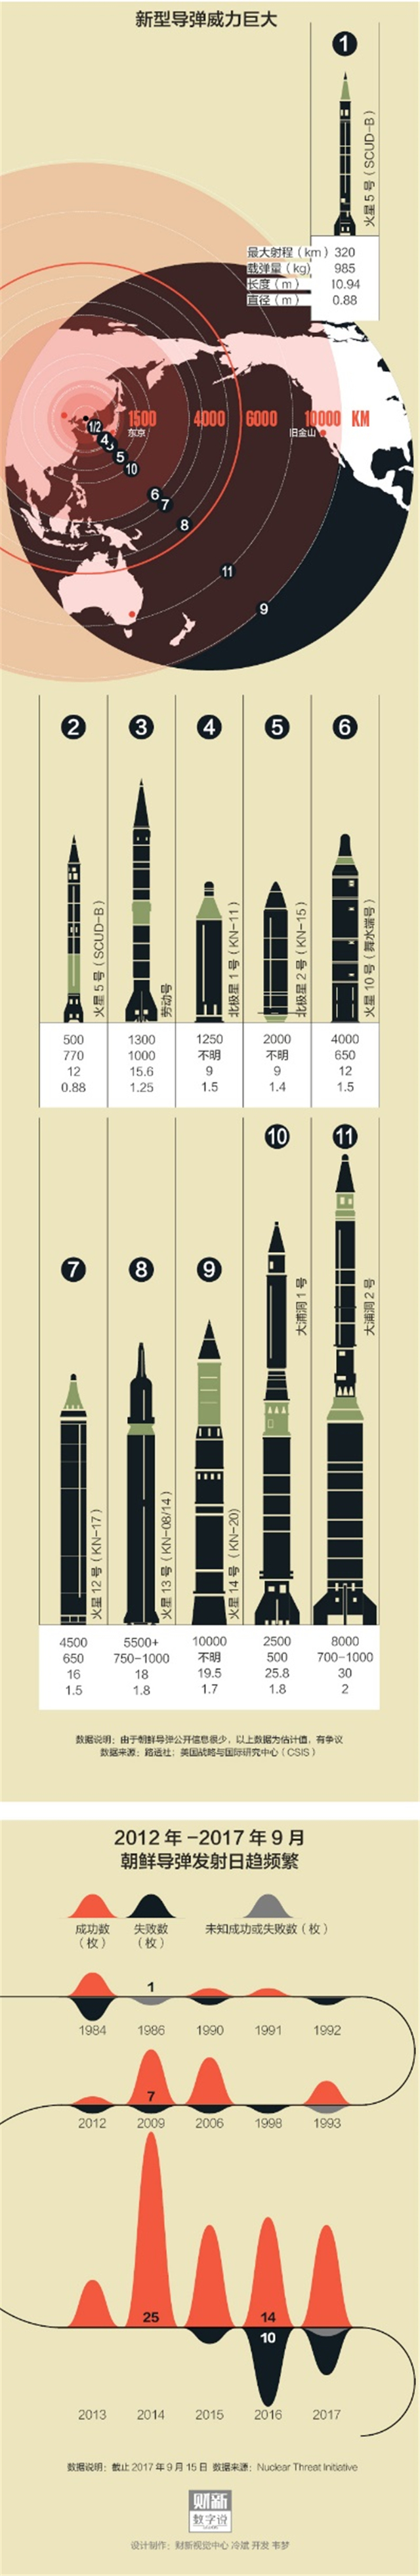 中国的捐扛火箭弹最大射程是多少_捐靖是怎么捐的视频_增雨火箭弹射程